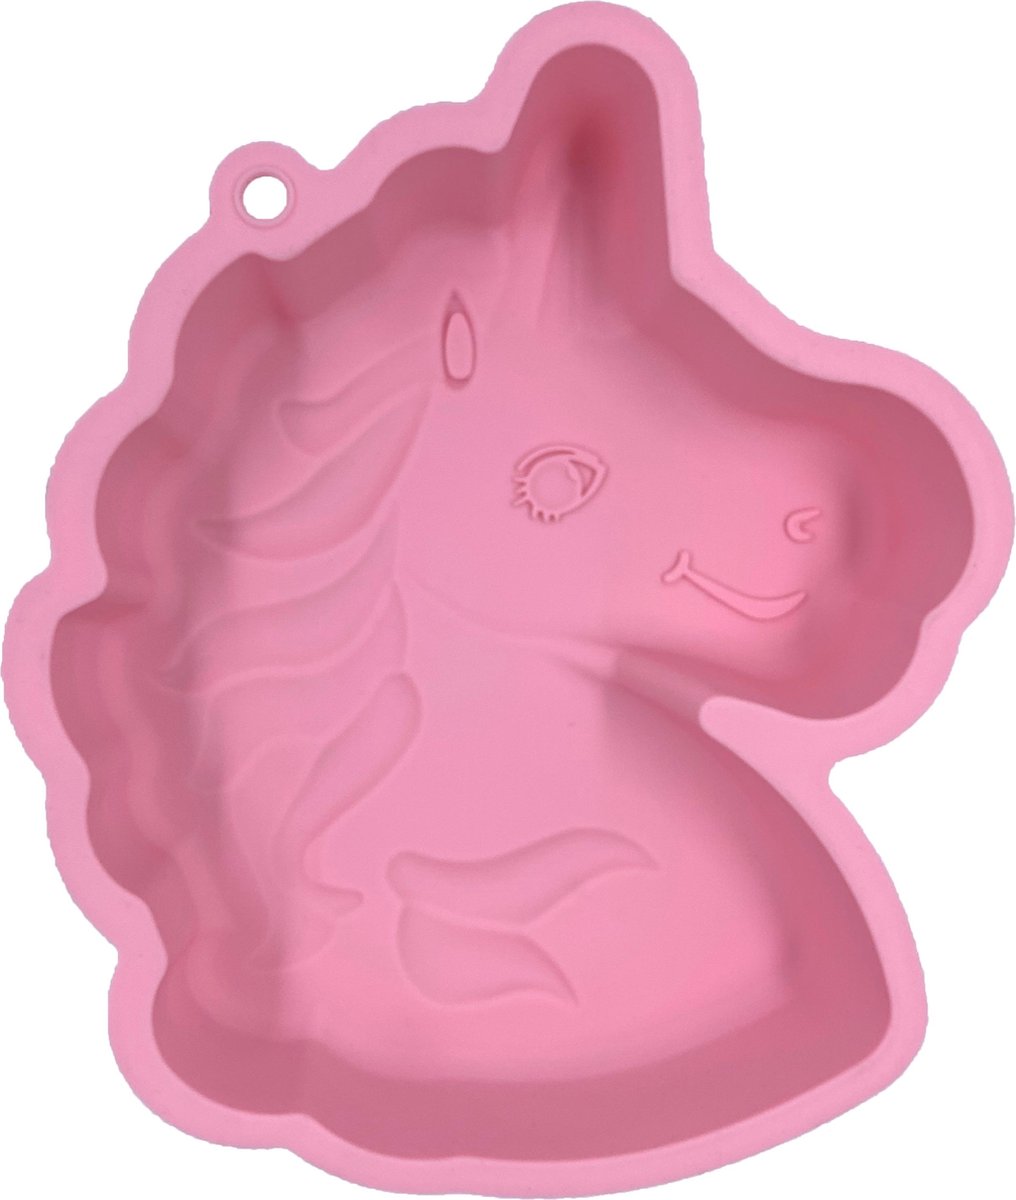 Bakvorm eenhoorn 27 x 22 x 5 cm, roze taartvorm, bakken, kinderverjaardag, paard, siliconen vorm voor cake, ijs, chocolade, brood, dessert, pudding, bijzondere eenhoornvorm BPA-vrij, eenhoorn, roze LICOMOULGM